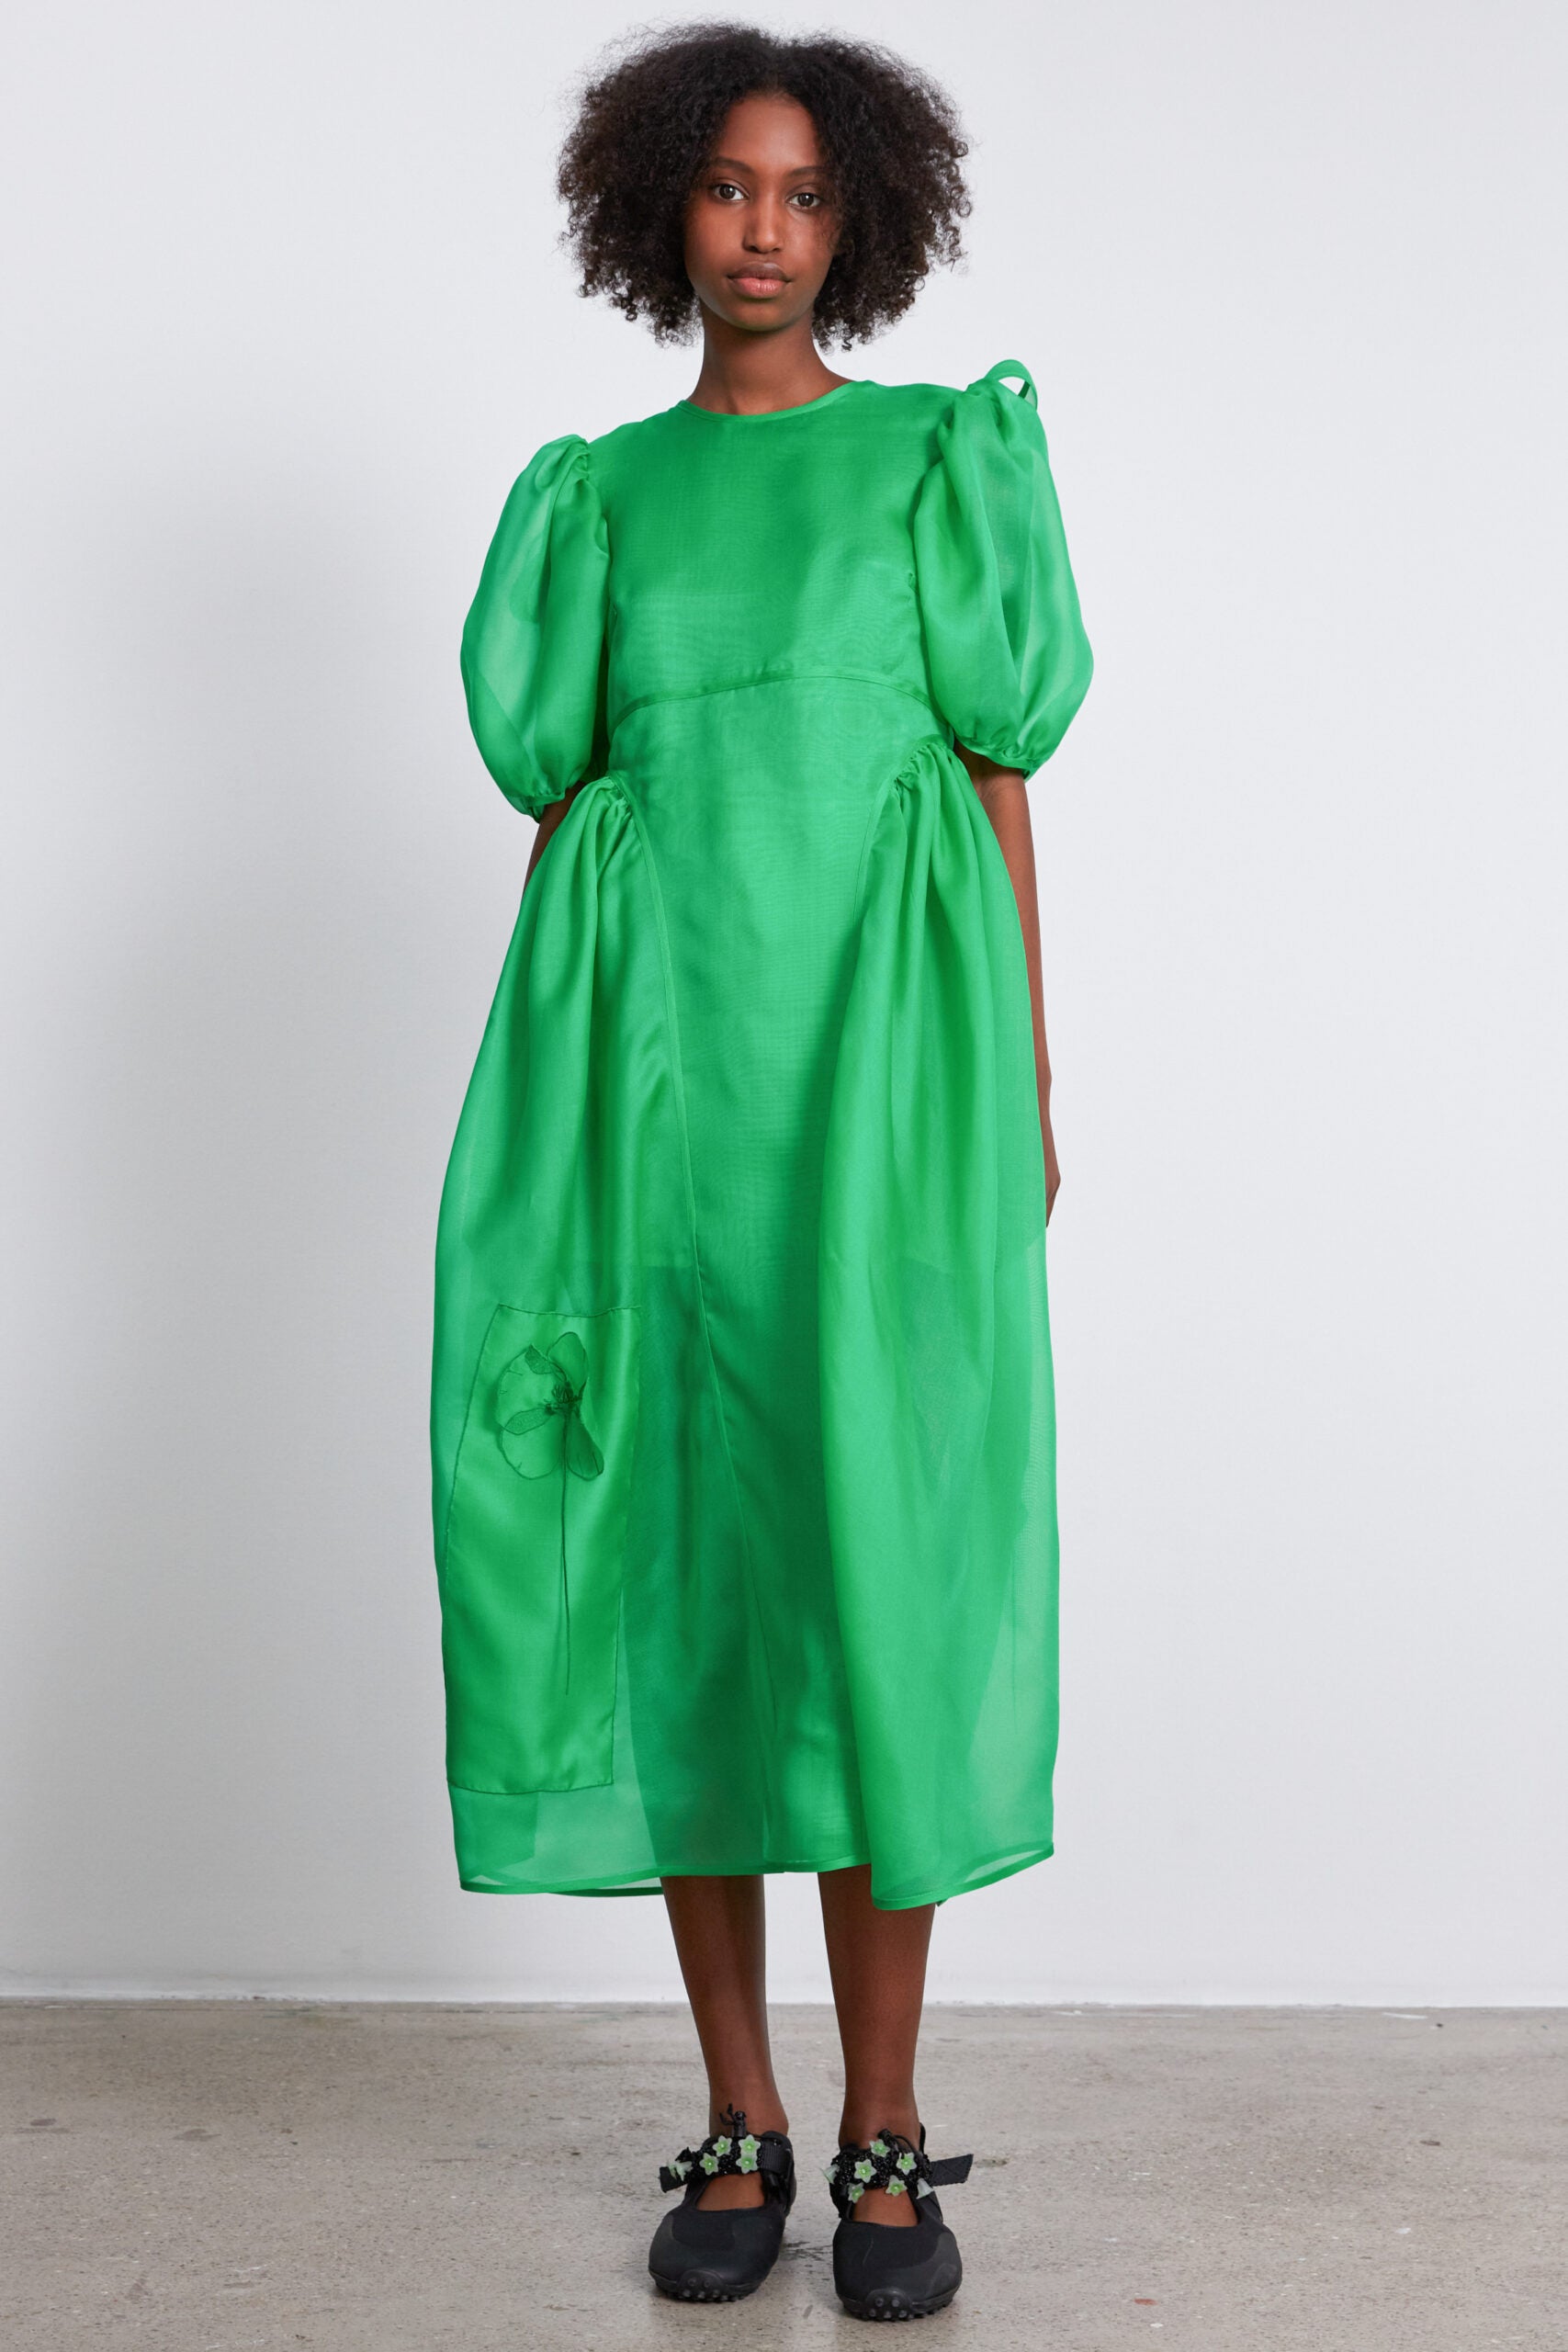 green puff sleeve dress